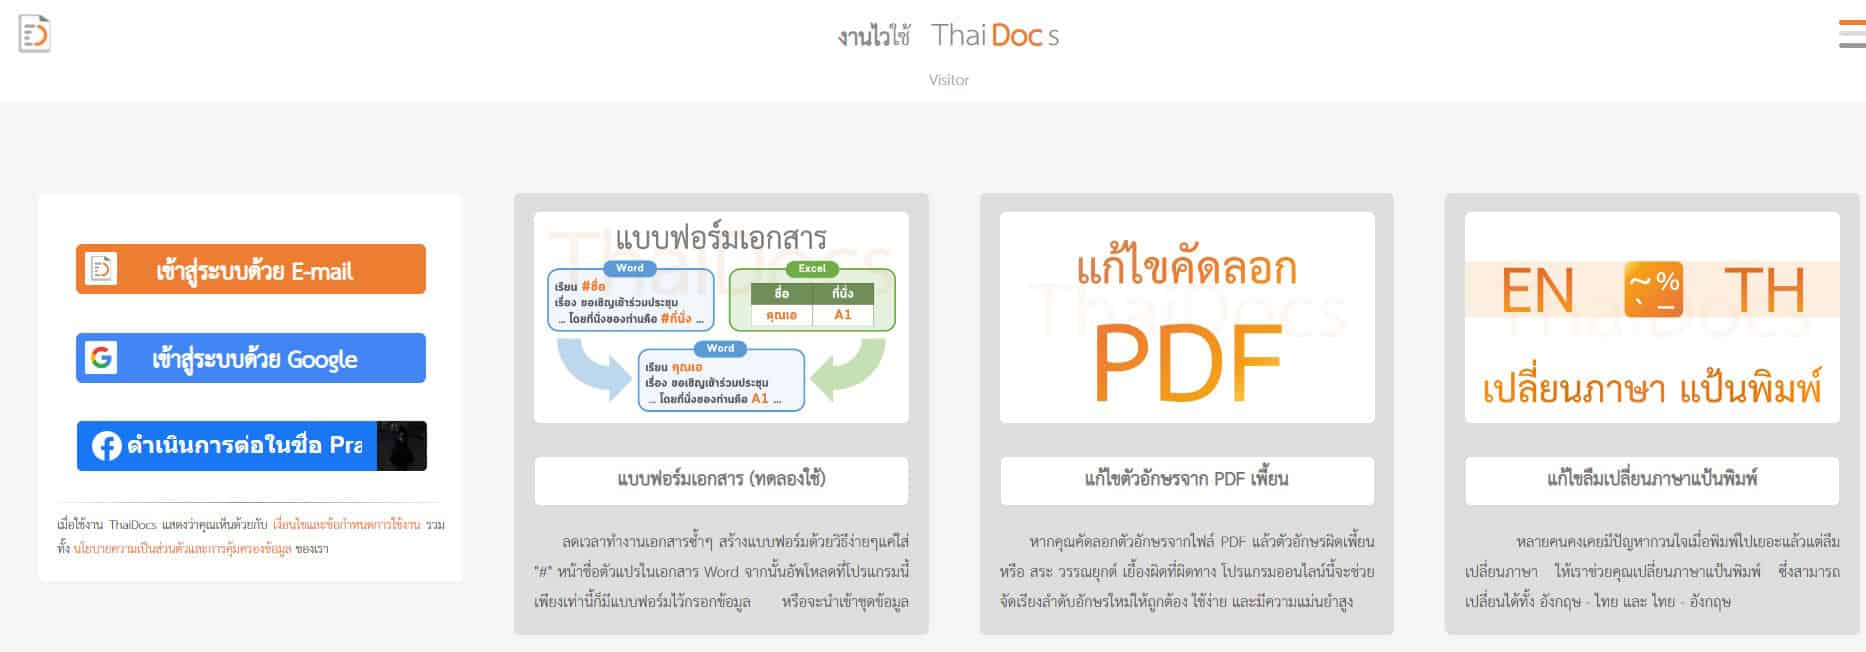 วิธีก็อปข้อความจาก PDF ภาษาไทย ไม่ให้เพี้ยน